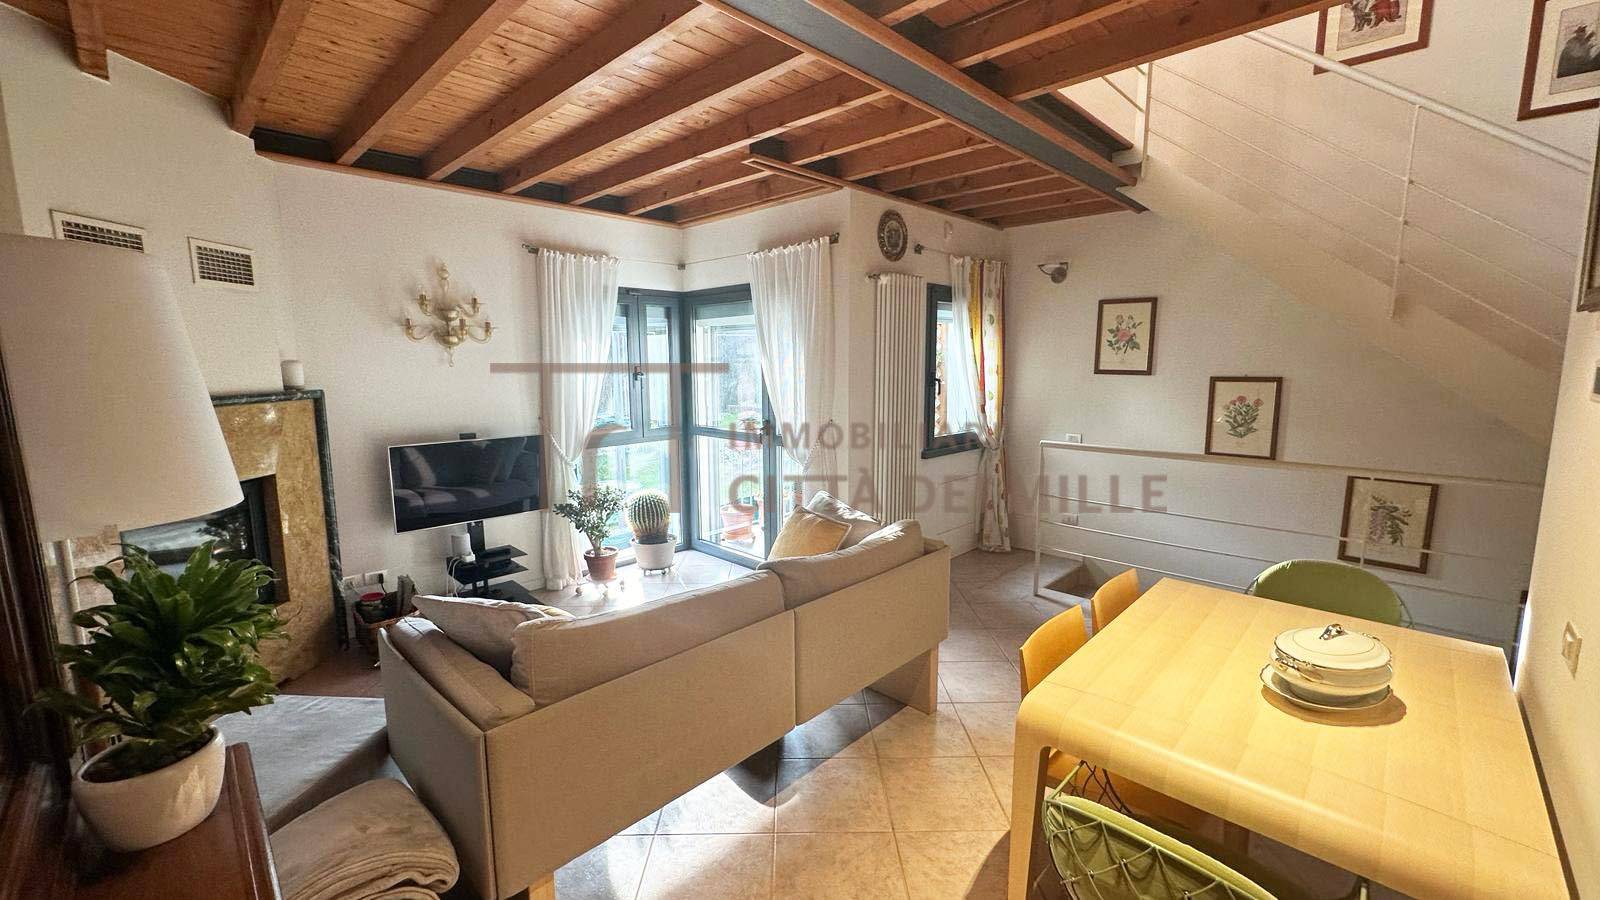 Appartamento in vendita a Ranica, 3 locali, zona Località: BorgoSale, prezzo € 300.000 | PortaleAgenzieImmobiliari.it